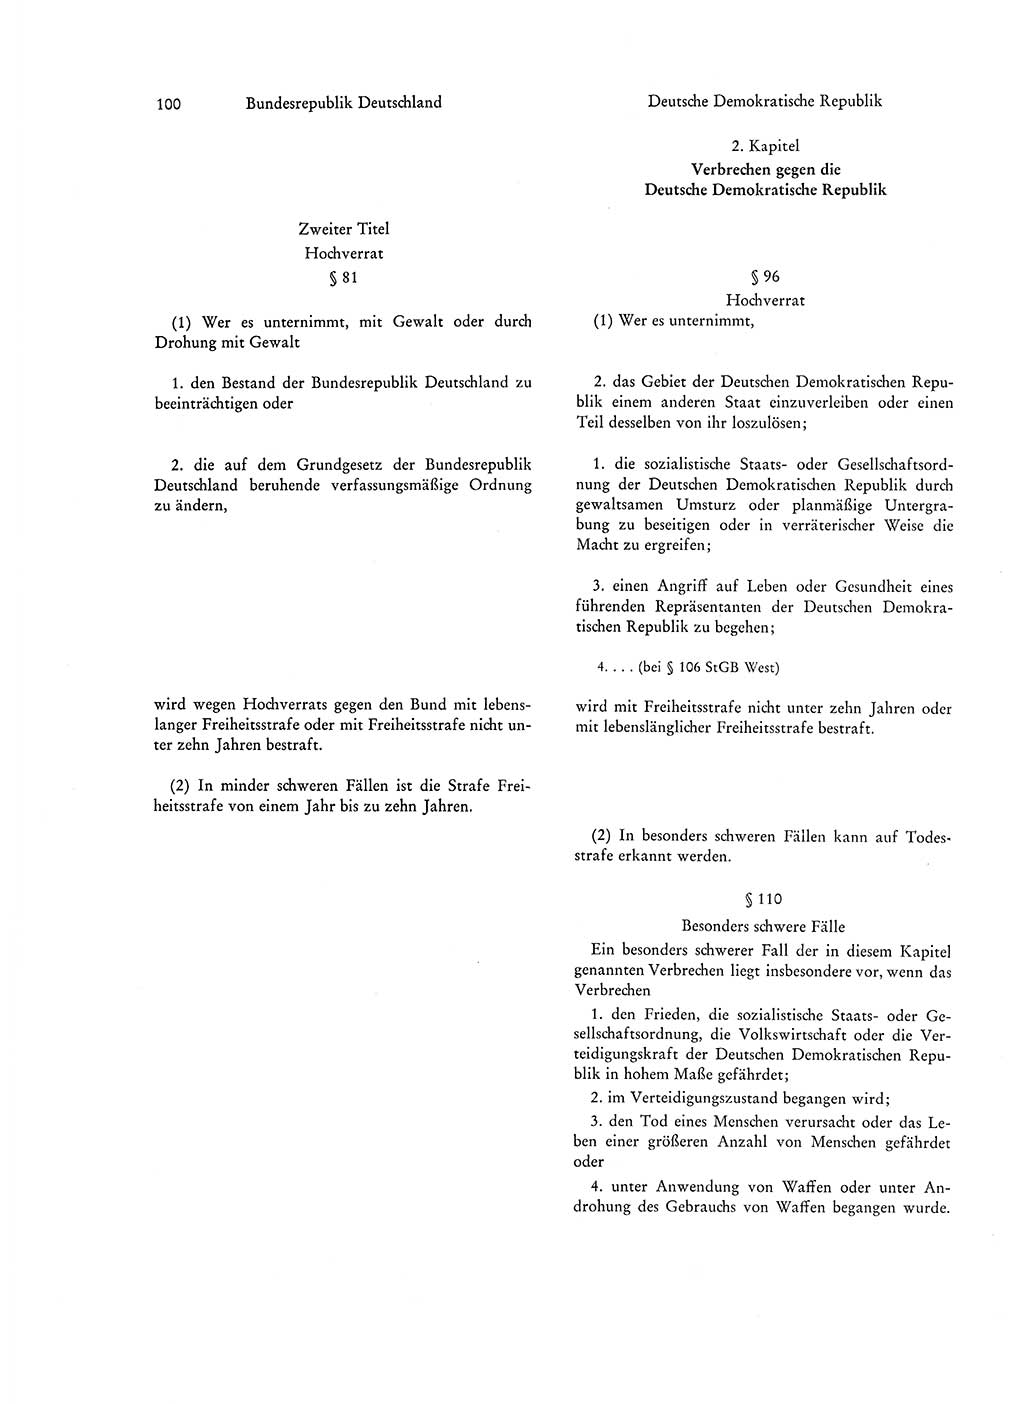 Strafgesetzgebung in Deutschland [Bundesrepublik Deutschland (BRD) und Deutsche Demokratische Republik (DDR)] 1972, Seite 100 (Str.-Ges. Dtl. StGB BRD DDR 1972, S. 100)